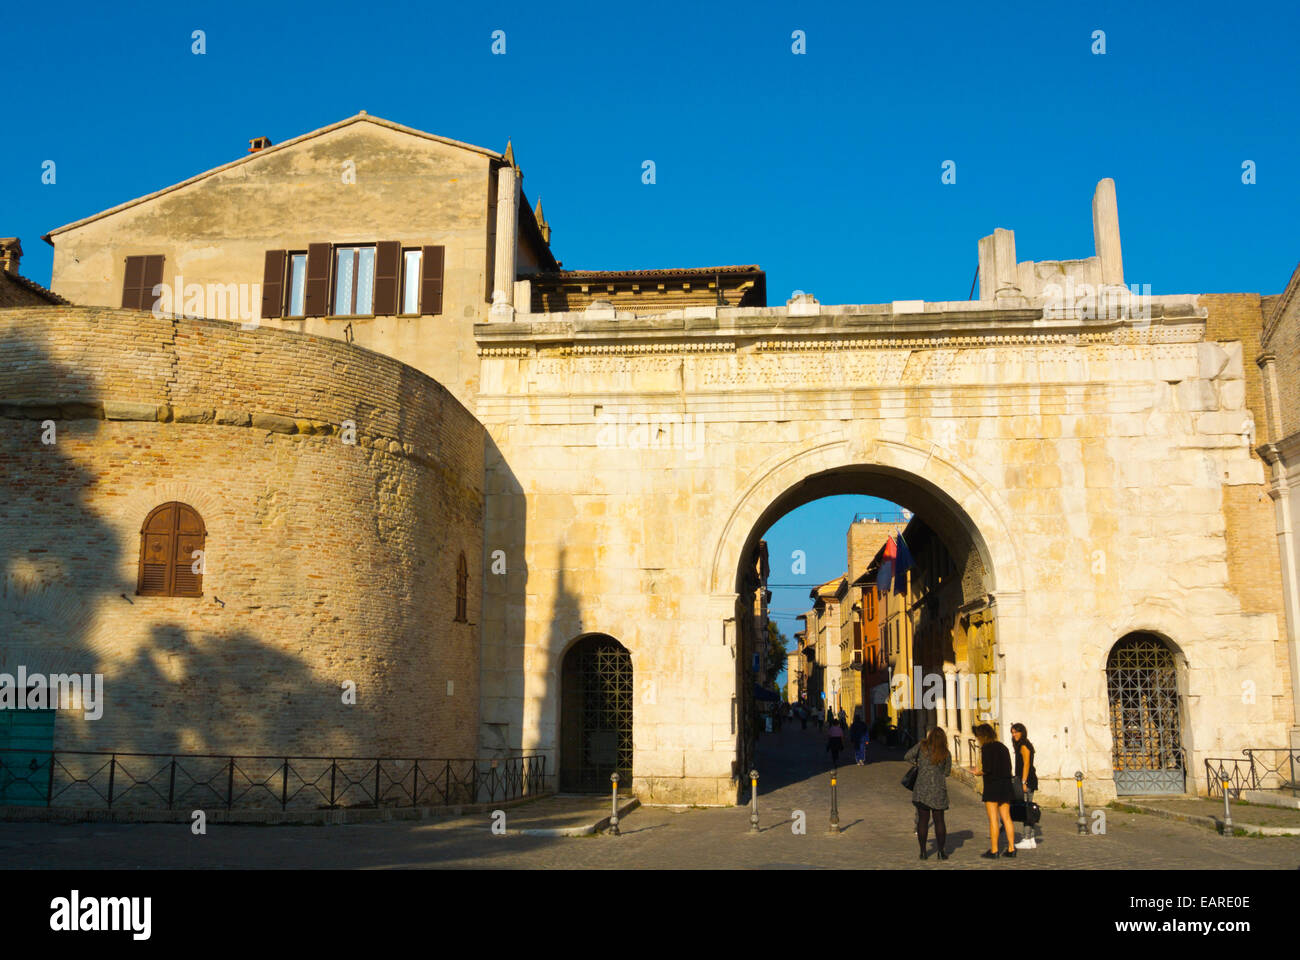 Arco di Augusto, Arch of Augustus, Fano, Marche region, Italy Stock Photo -  Alamy